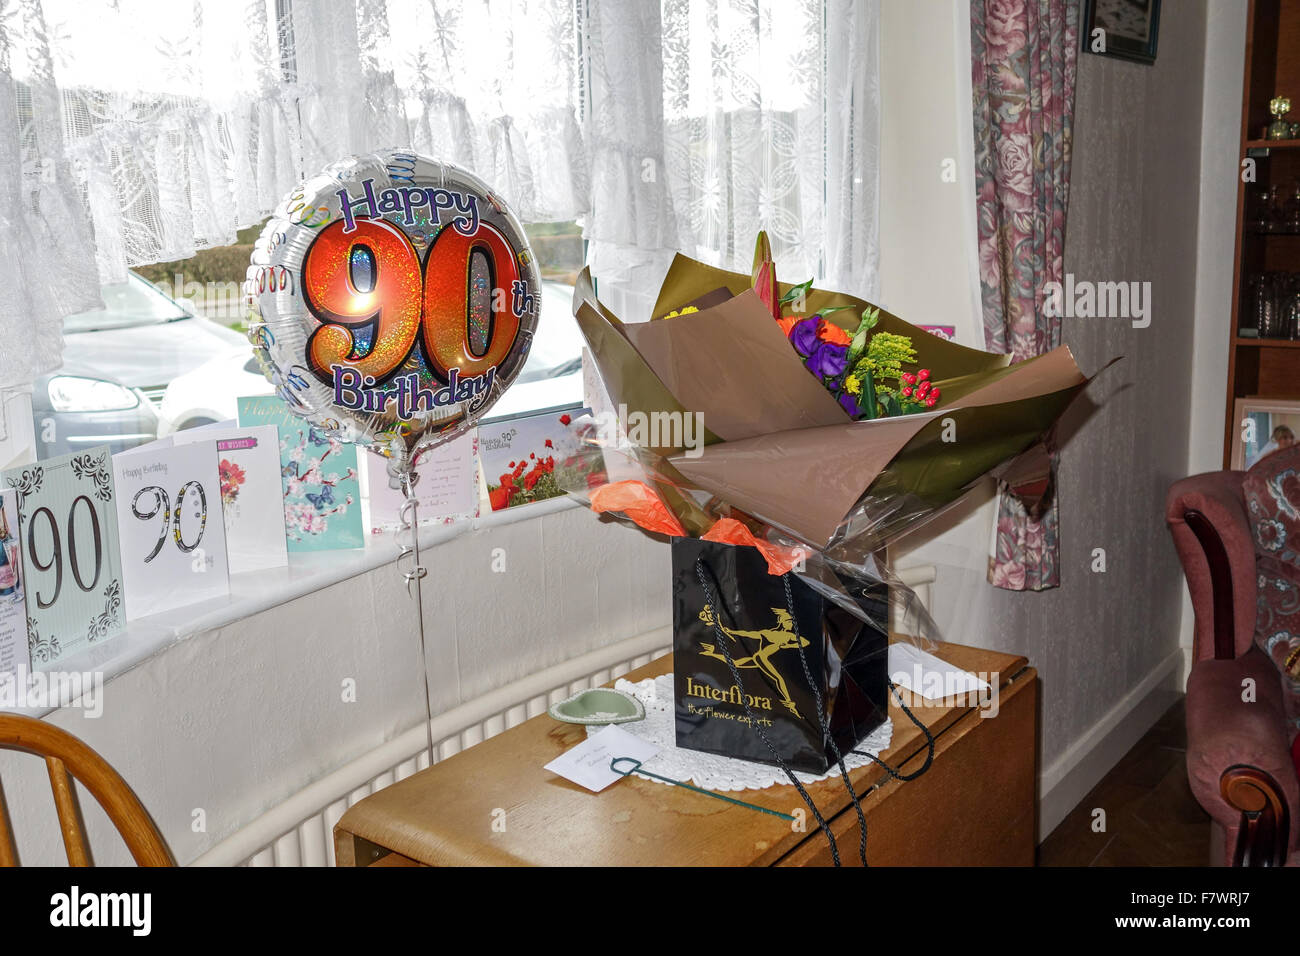 Ballon mit 90 Happy Birthday, Karten und einen Blumenstrauß Stockfoto